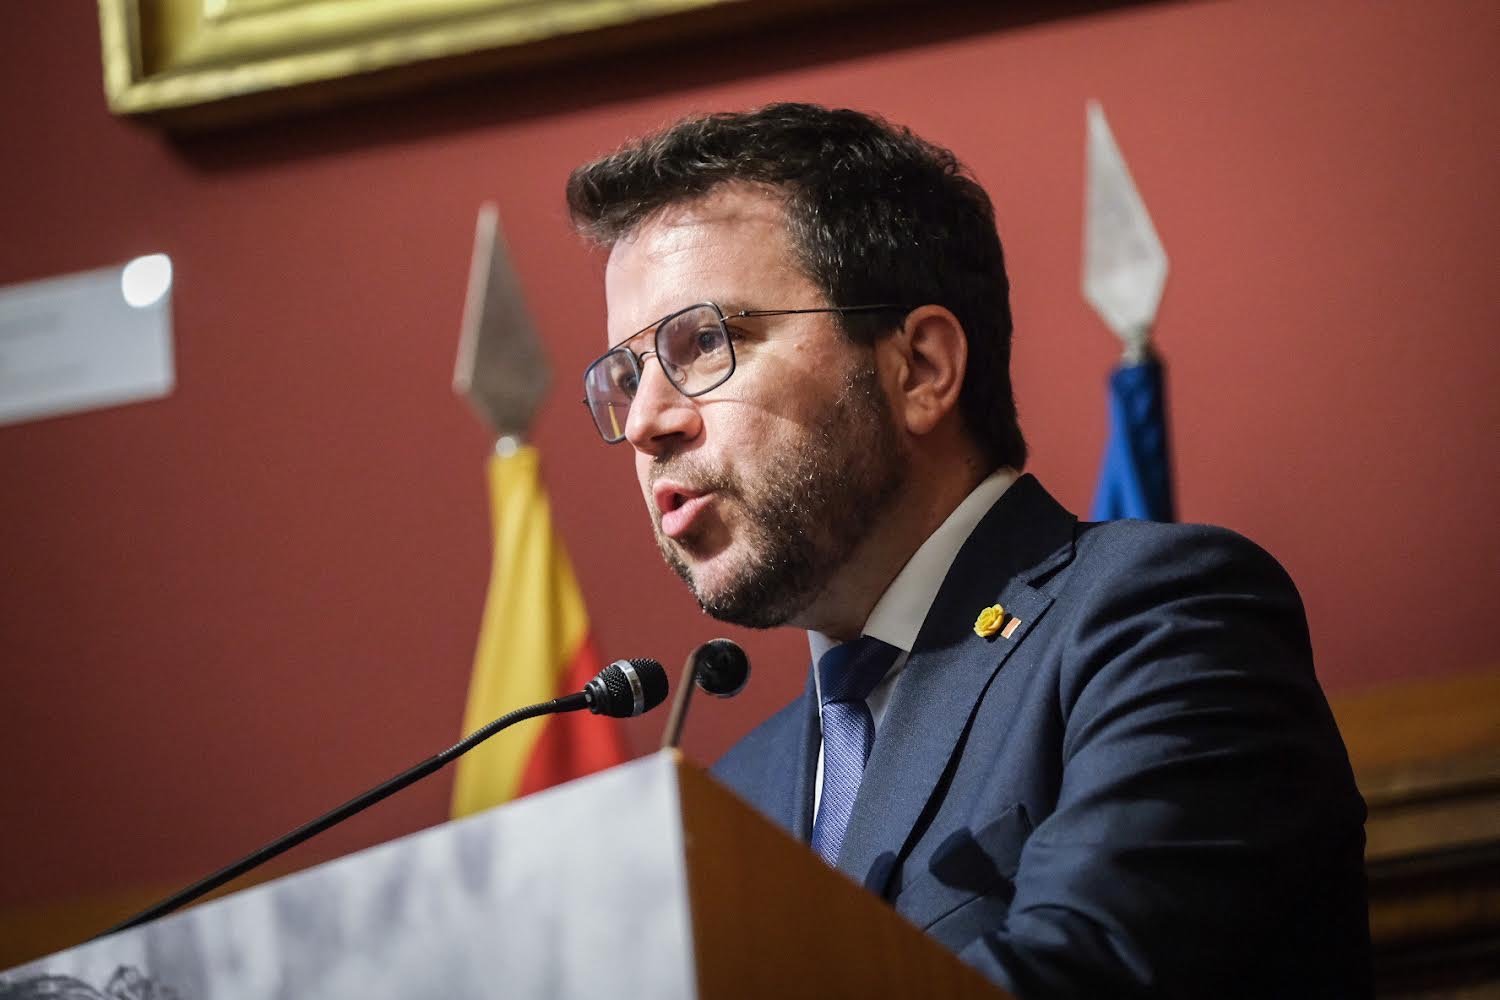 Aragonès enaltece a Trias Fargas y los "valores compartidos" que lo llevaron a la política